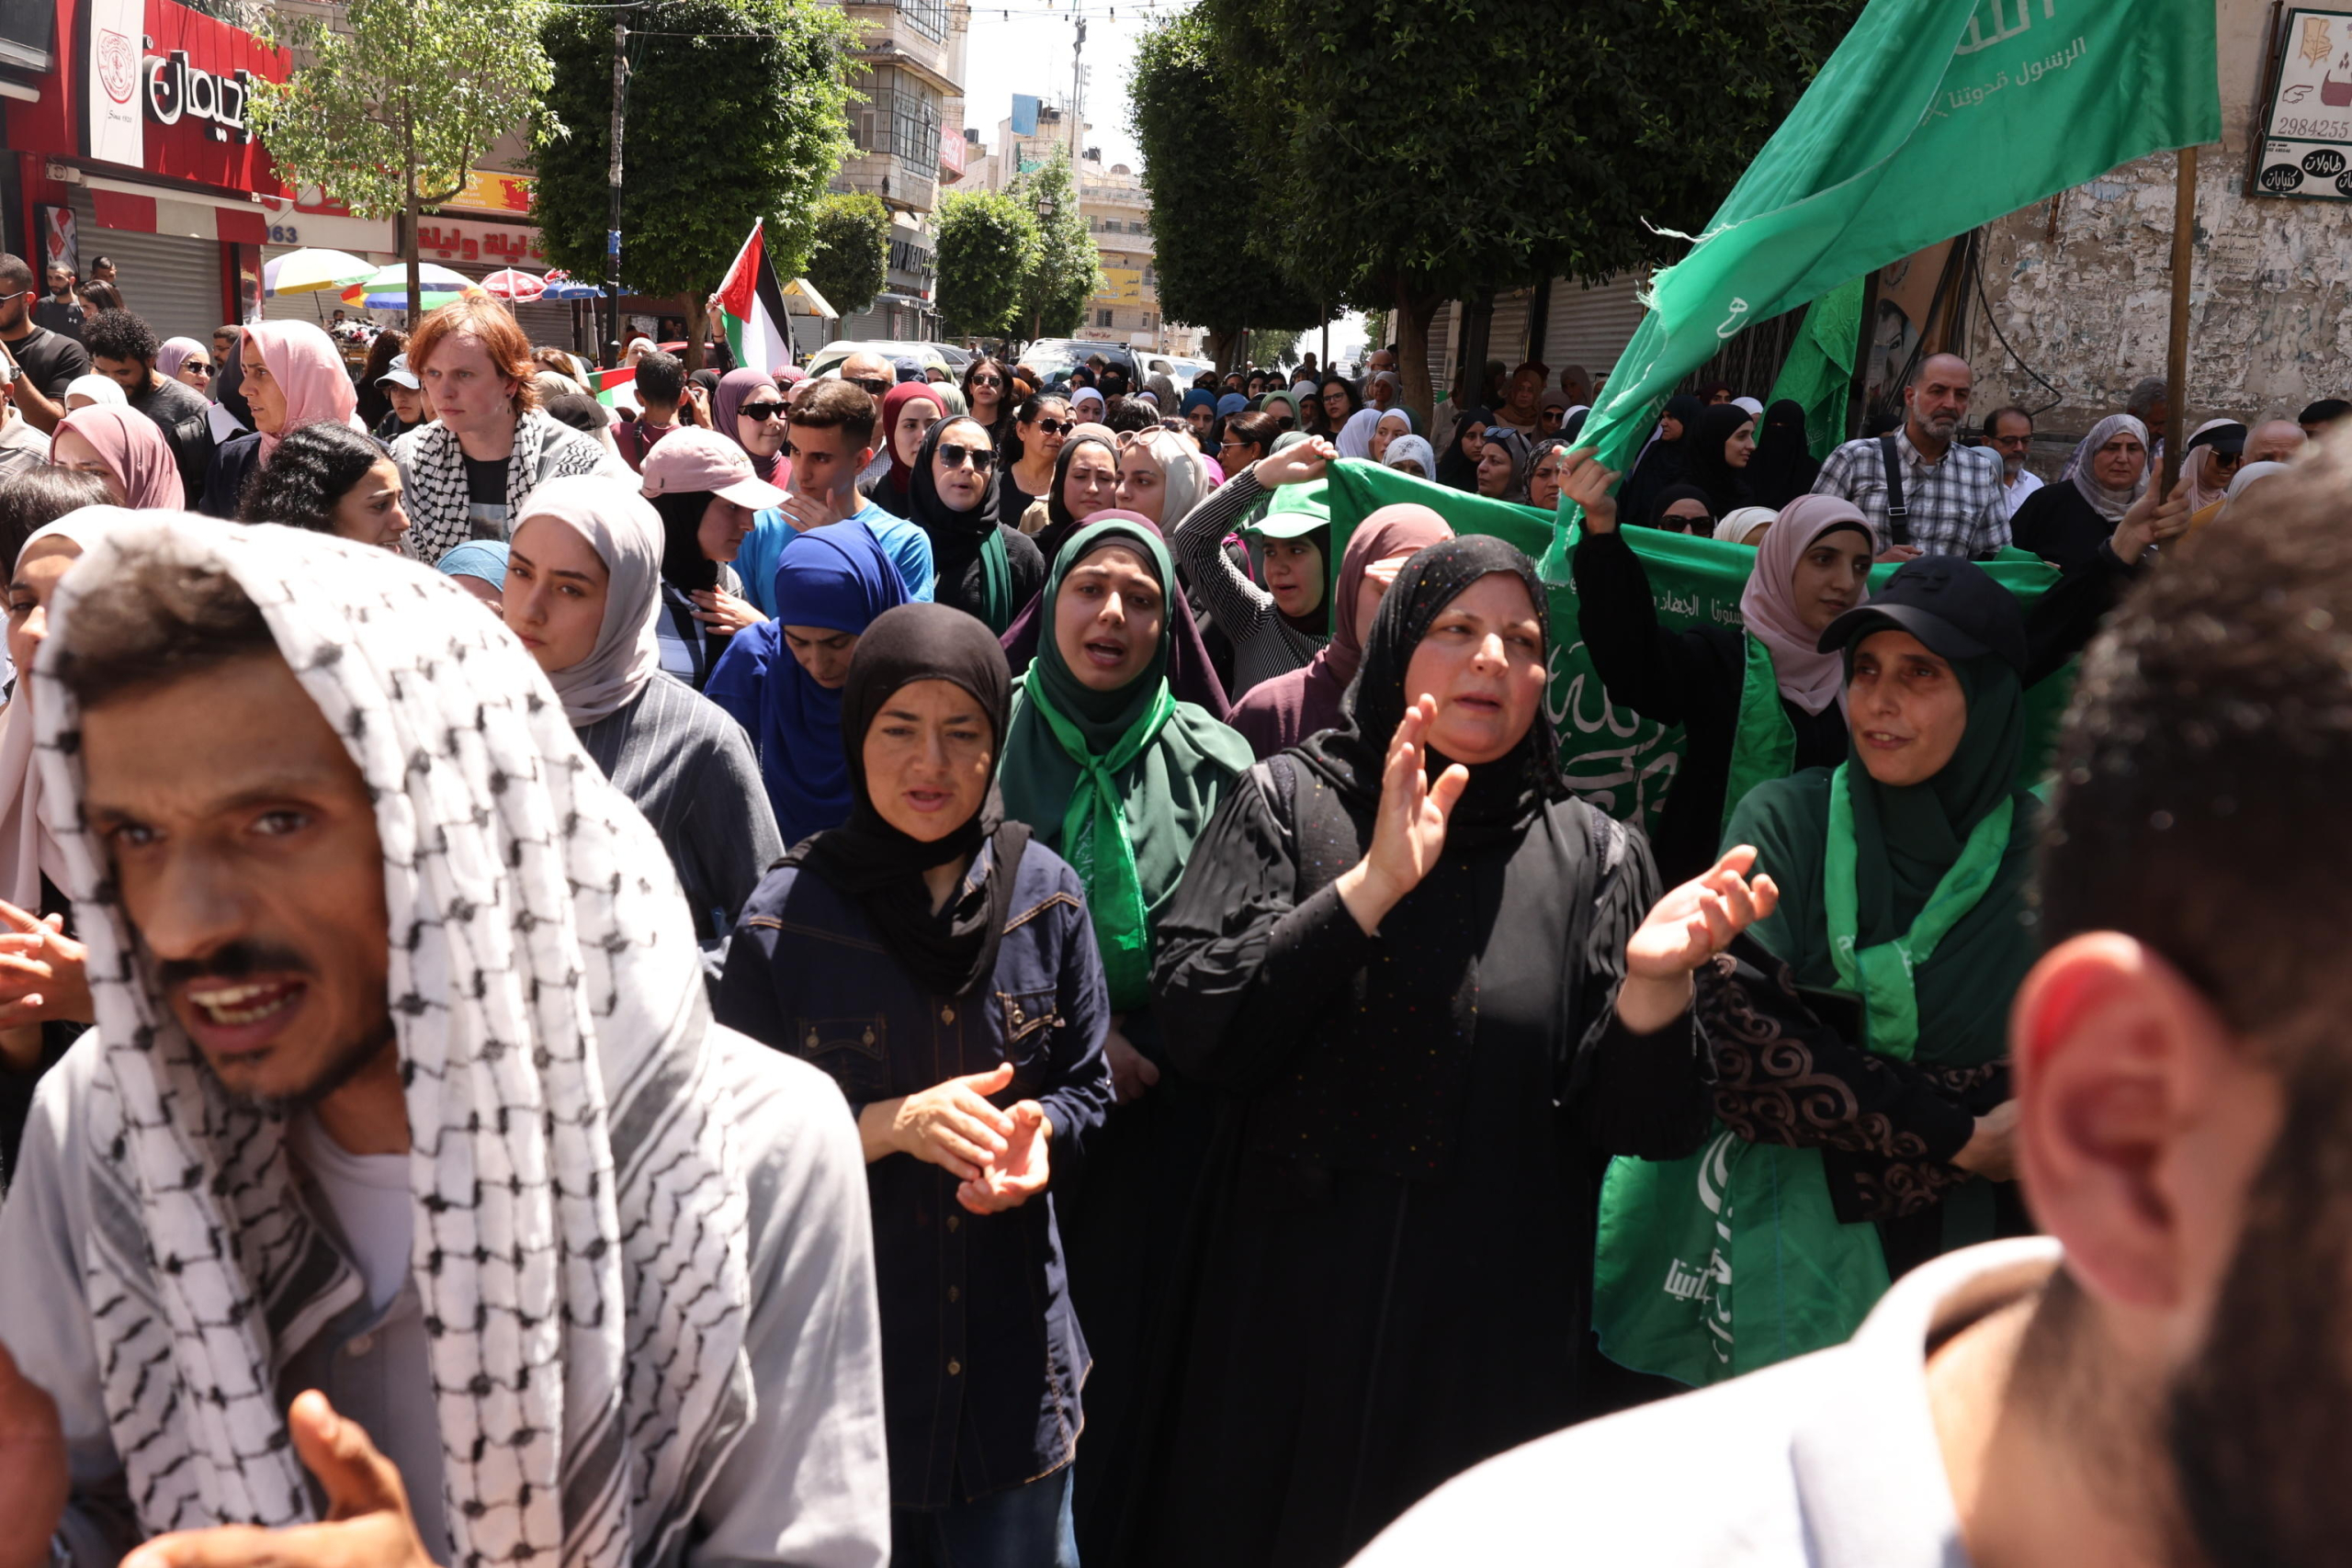 Palestinesi sventolano bandiere di Hamas mentre protestano dopo l’uccisione del leader politico di Hamas Ismail Haniyeh, nella città di Ramallah, in Cisgiordania. Foto Ansa EPA/ALAA BADARNEH

